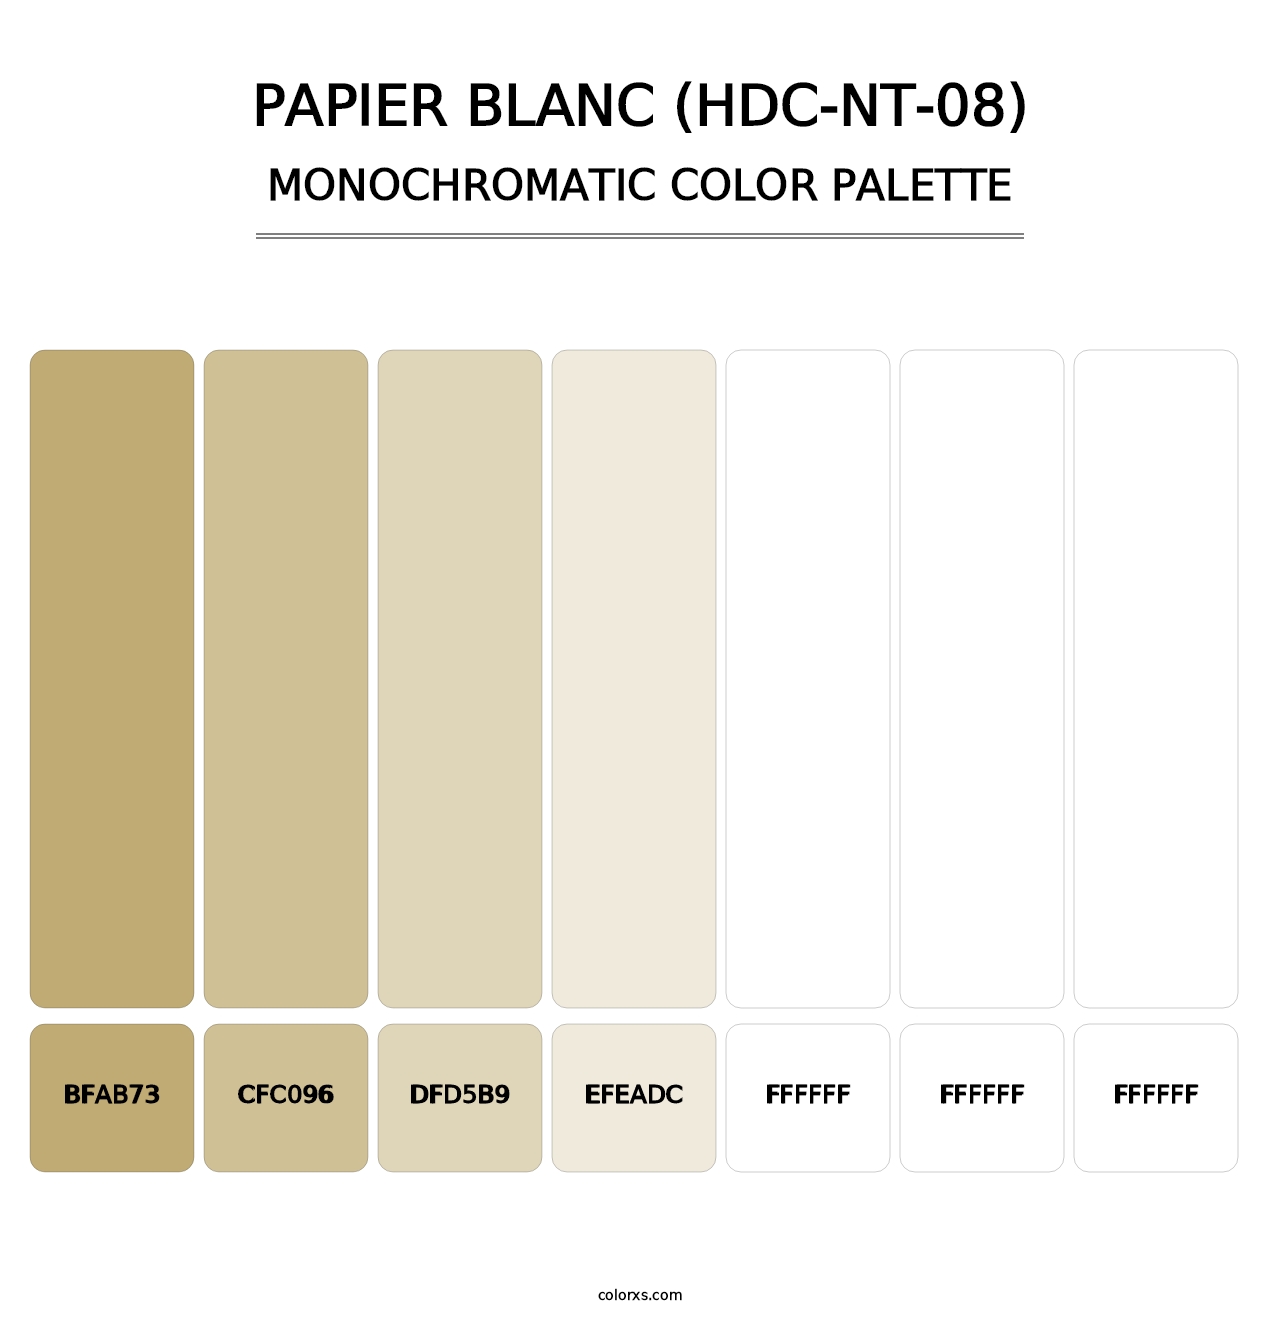 Papier Blanc (HDC-NT-08) - Monochromatic Color Palette